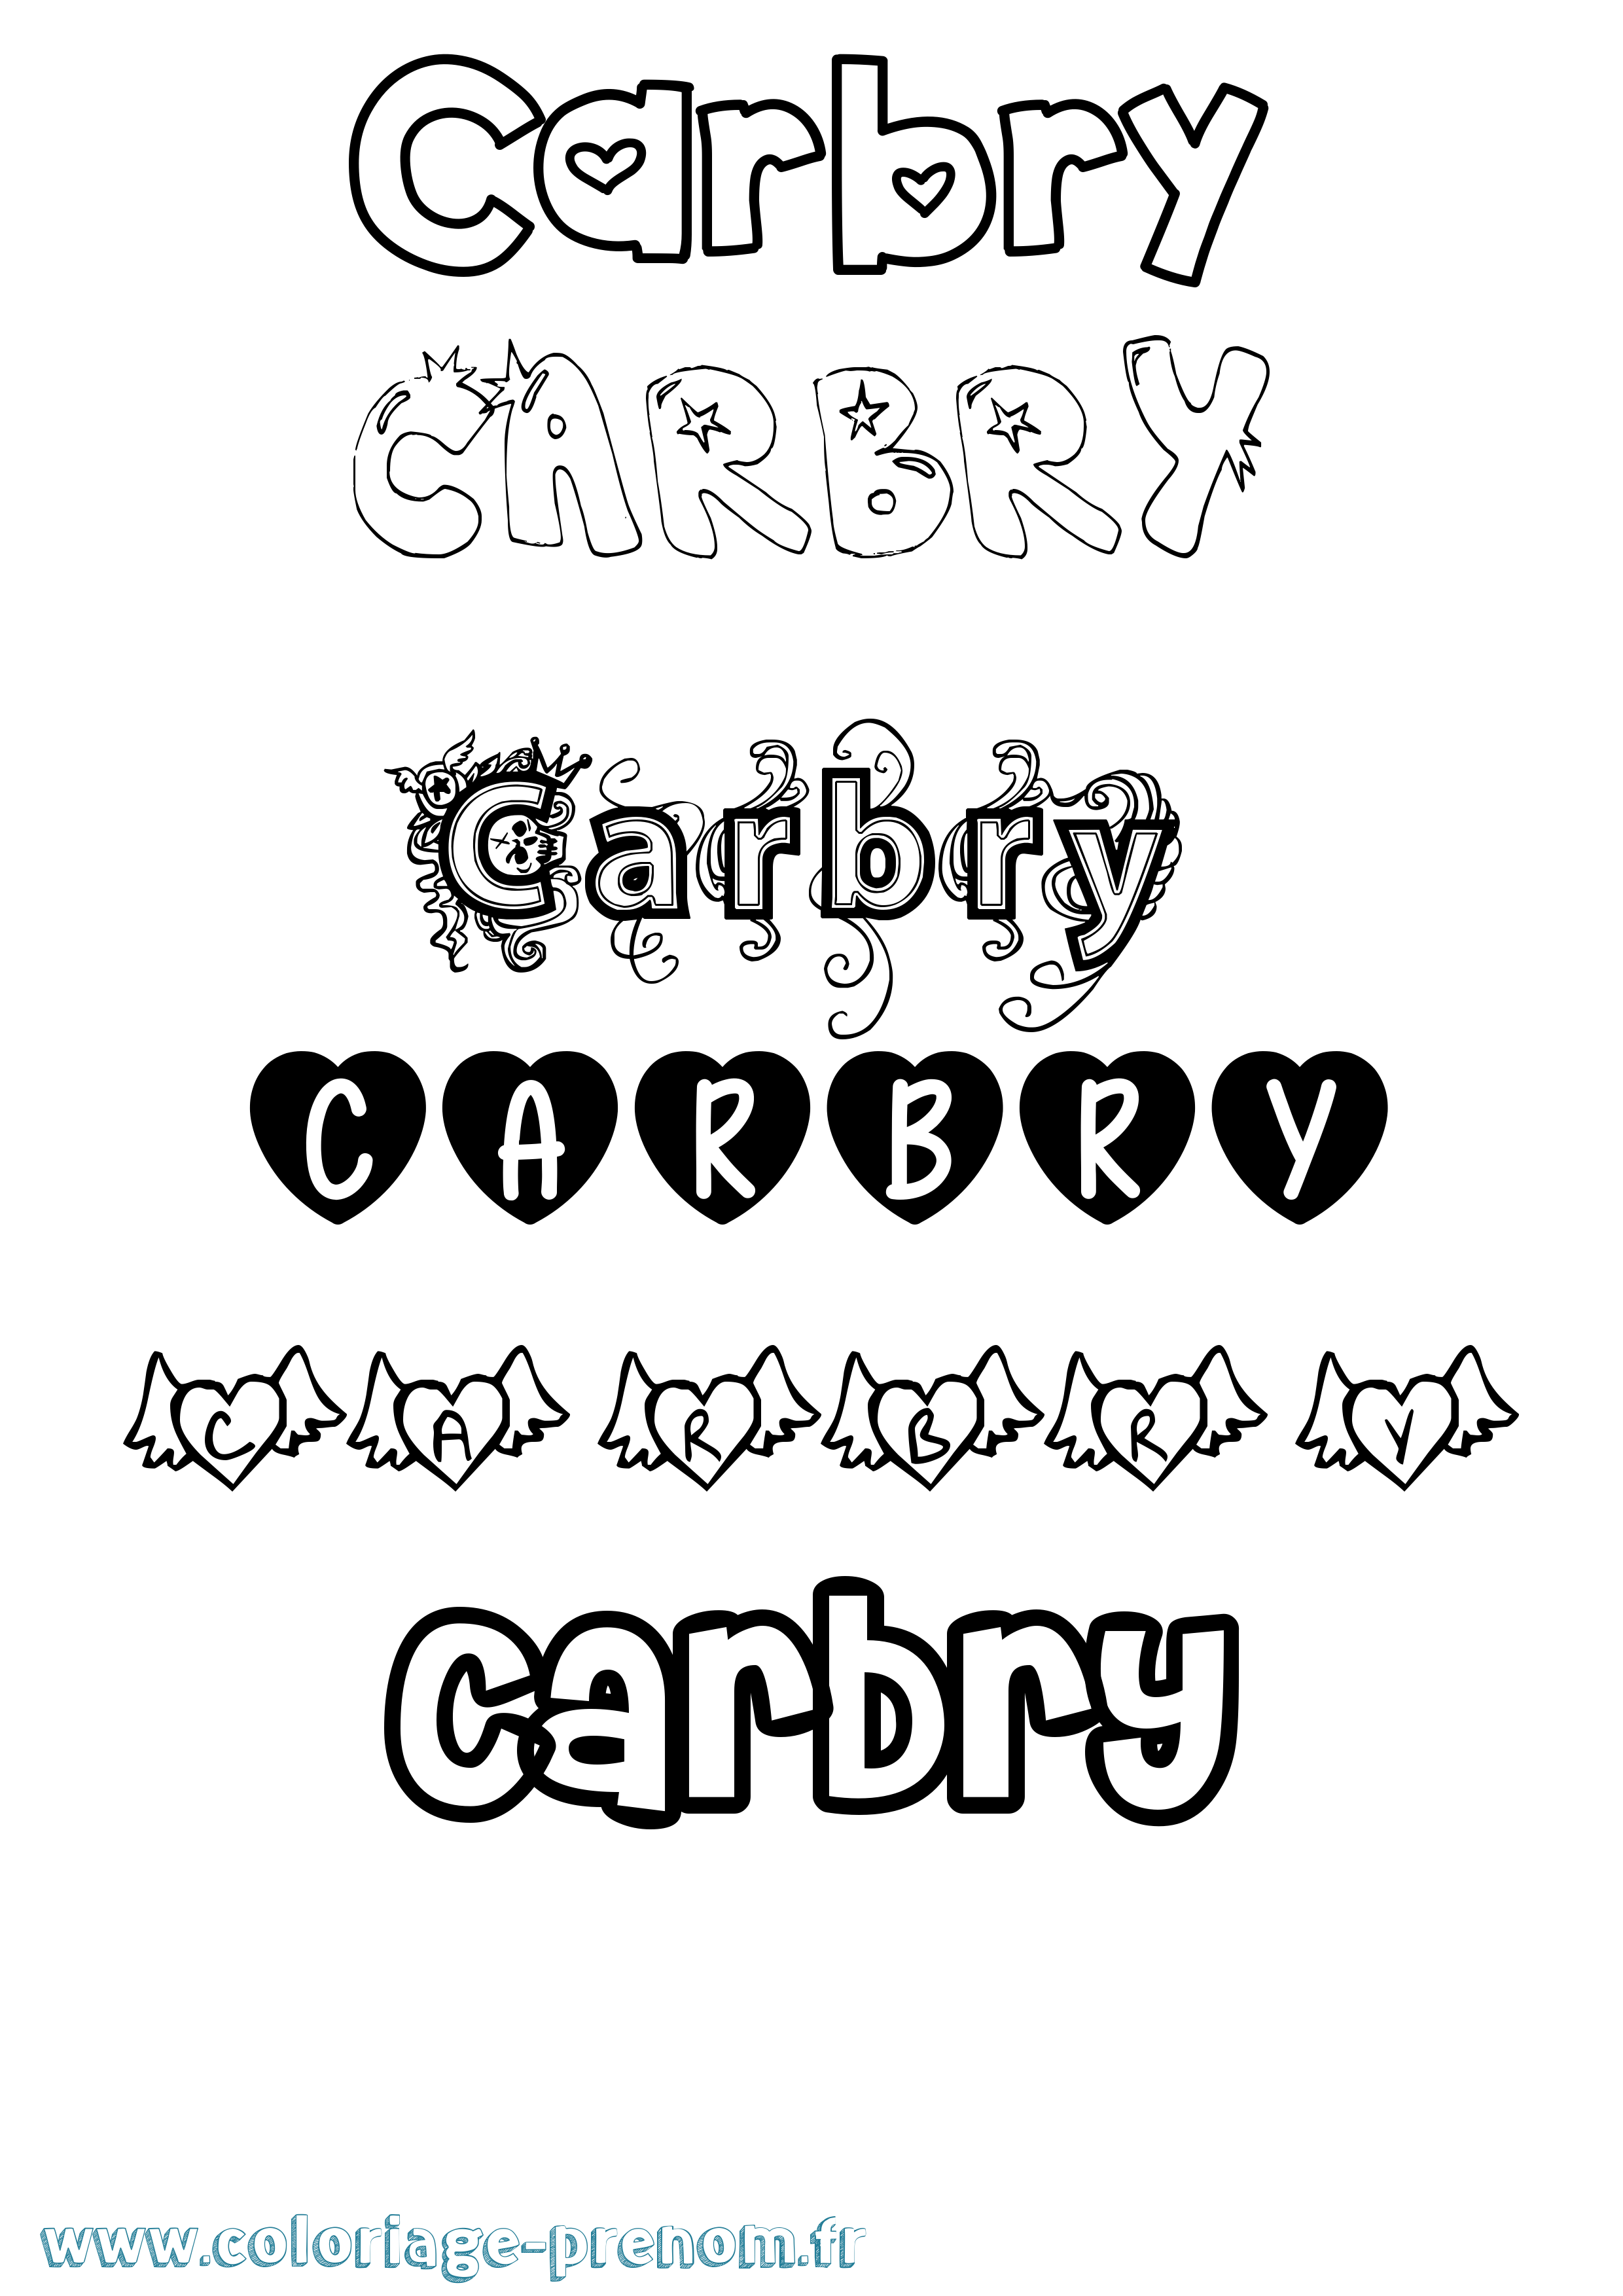 Coloriage prénom Carbry Girly